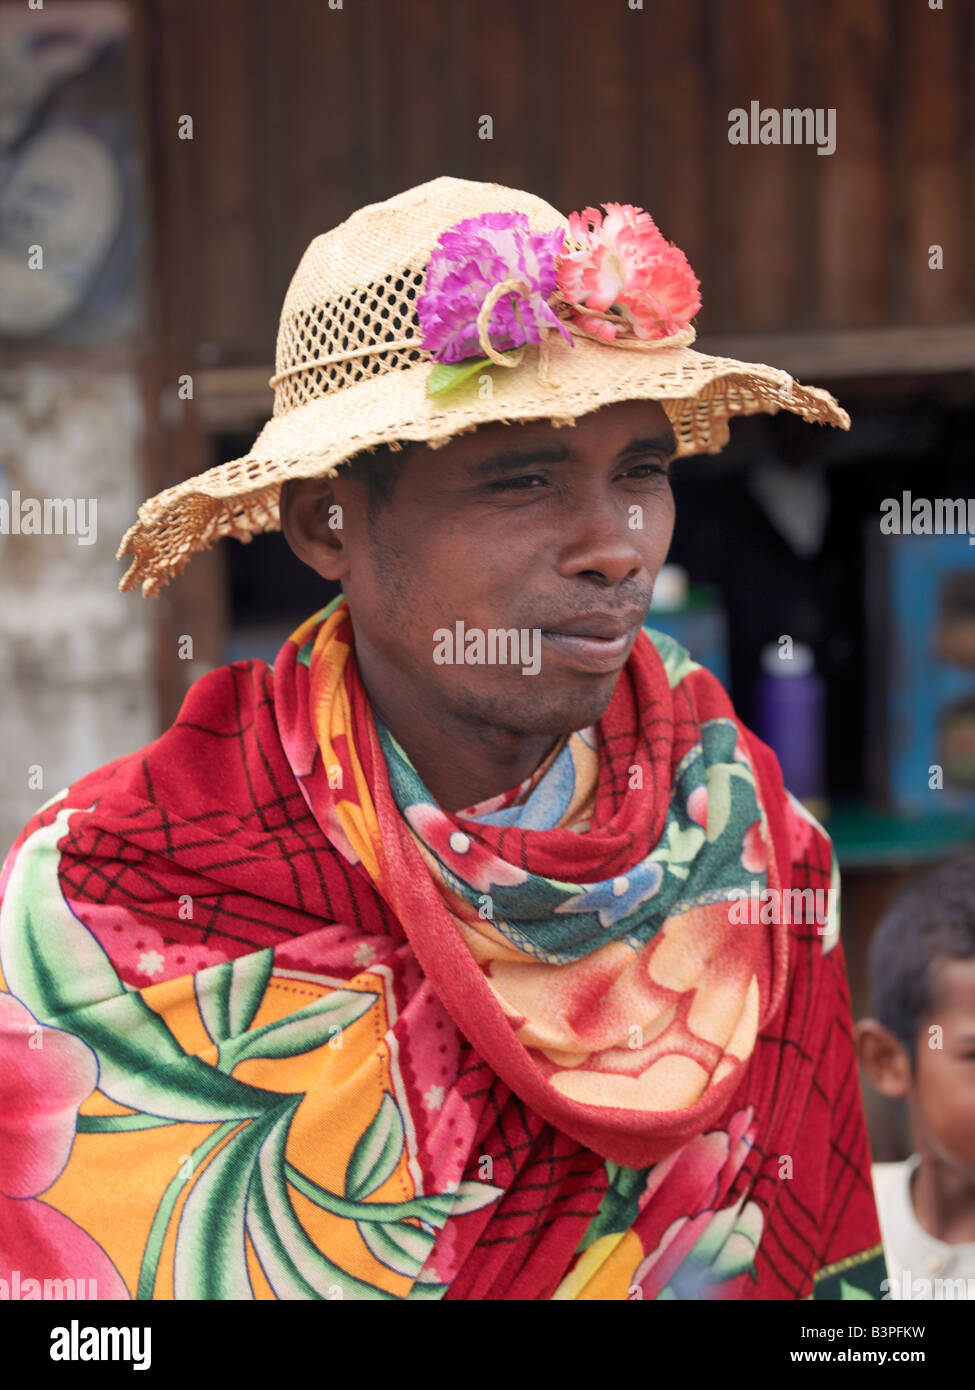 Madagascar, Southern Highlands, Ambohimahasoa. Un homme porte un chapeau  fabriqué localement décorés de fleurs artificielles.Madagascar est bien  connu pour l'extraordinaire variété de styles et de ses chapeaux locaux,  qui varient considérablement d'une